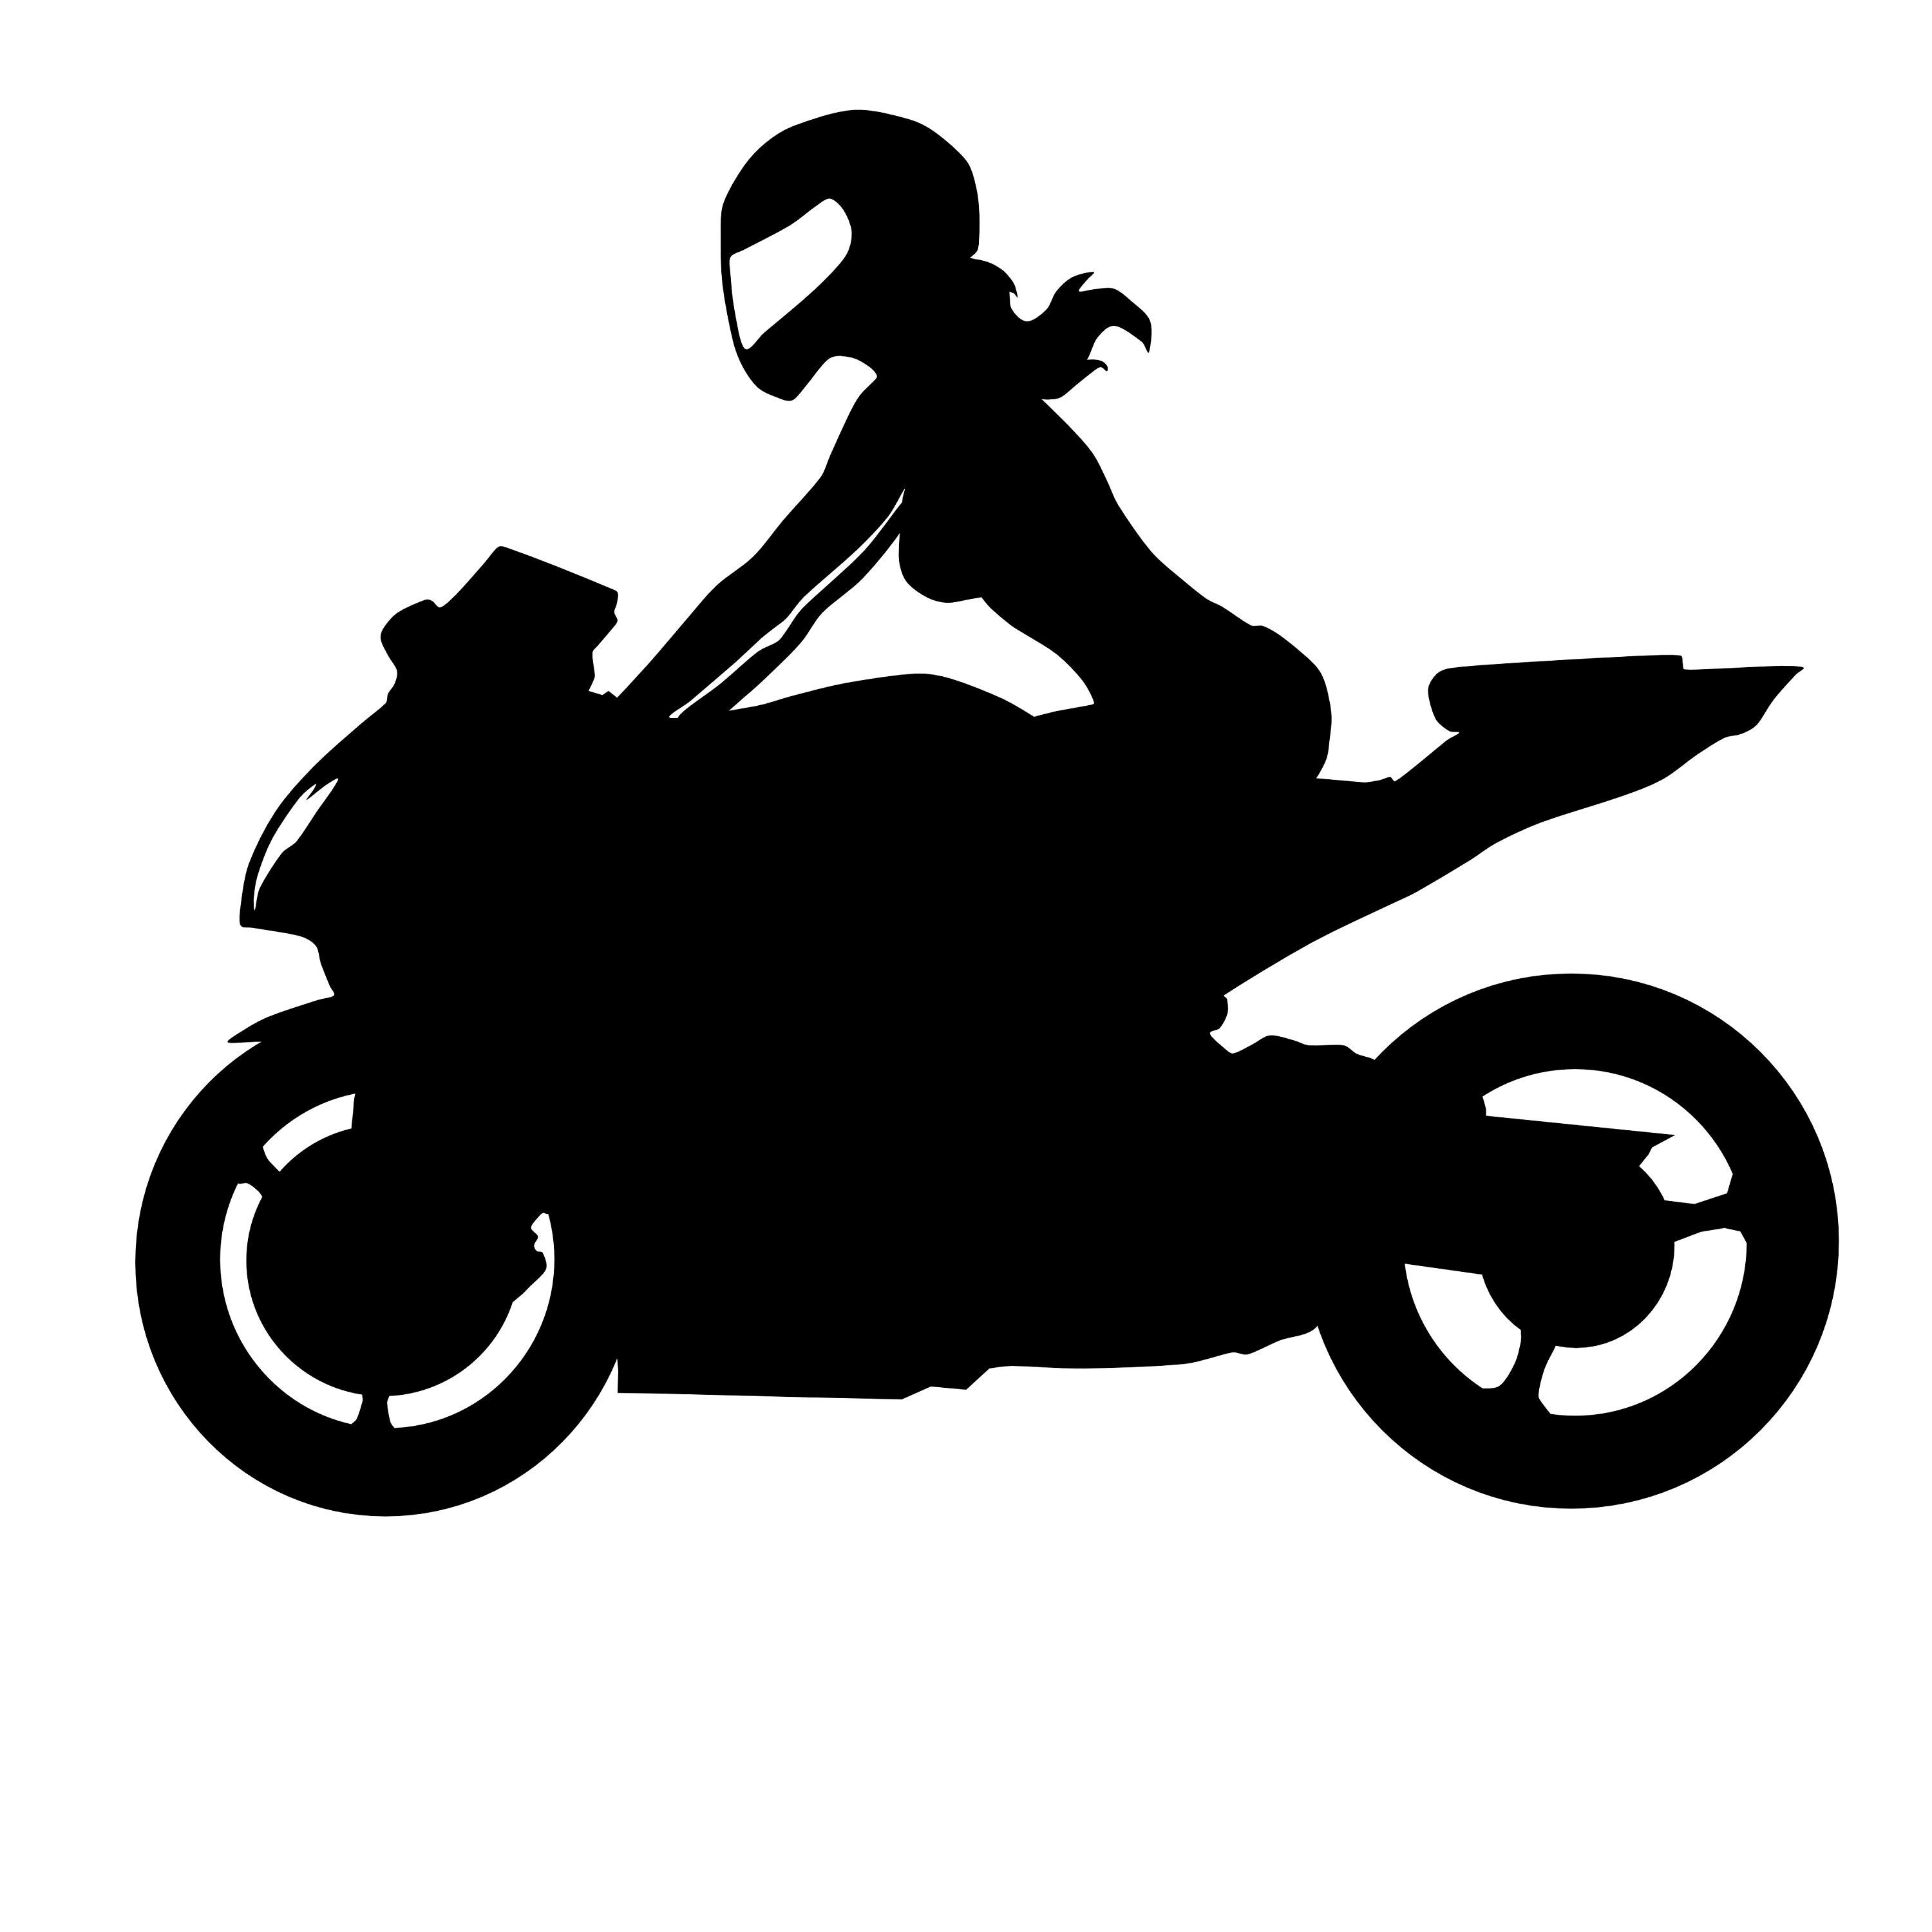 adesivo Sticker decal autocollant per moto donna motocilcista i'am lady biker 